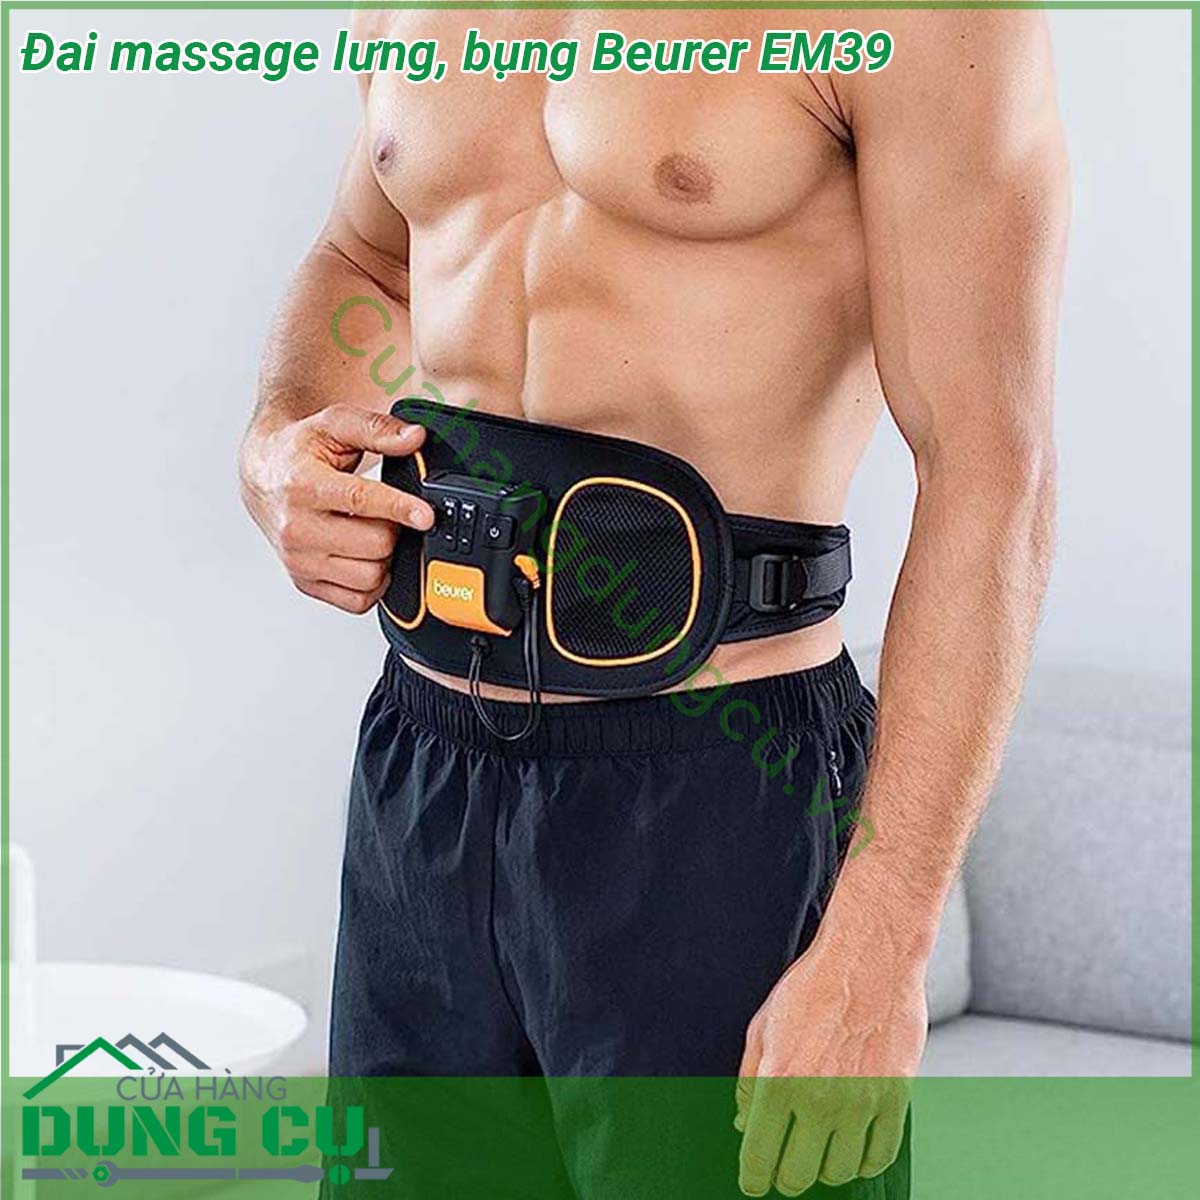 Đai massage lưng bụng Beurer EM39 hỗ trợ điều trị các bệnh đau lưng đau cơ sử dụng kích thích cơ điện để tăng cường các cơ không hoạt động ngăn ngừa teo cơ liên quan đến bất động hoặc bệnh không hoạt động liên quan phục hồi gân và cơ bắp và duy trì cơ bắp di động trong và sau khi bệnh